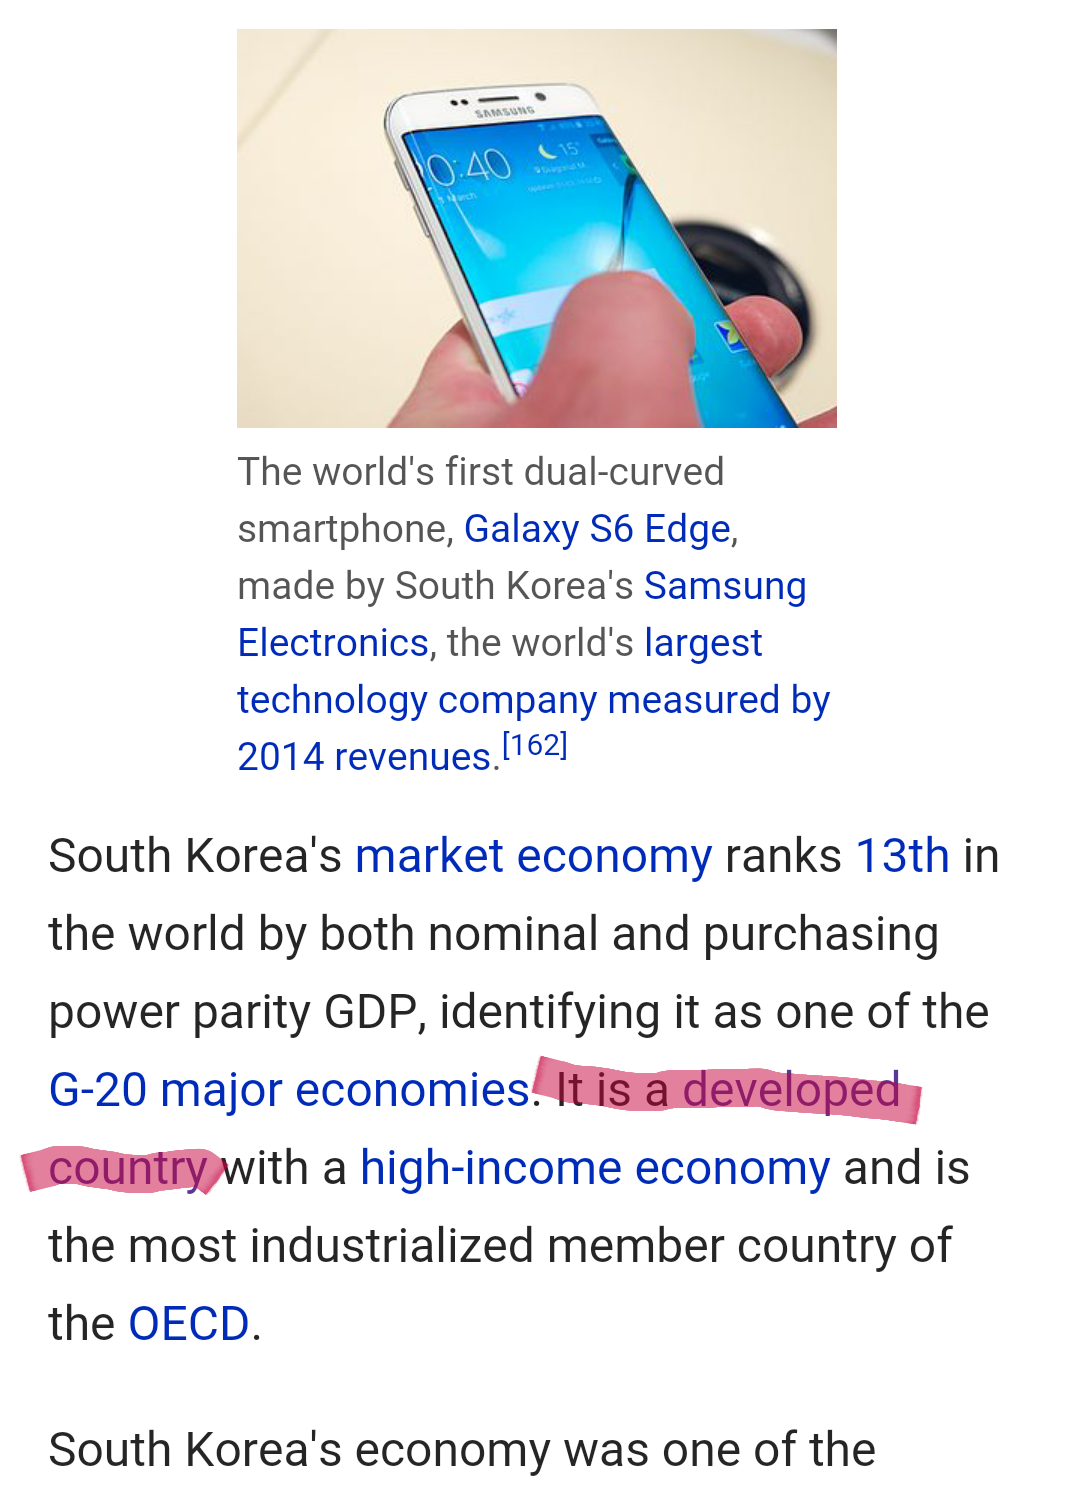 韩国是不是发展中国家? - 知乎用户的回答